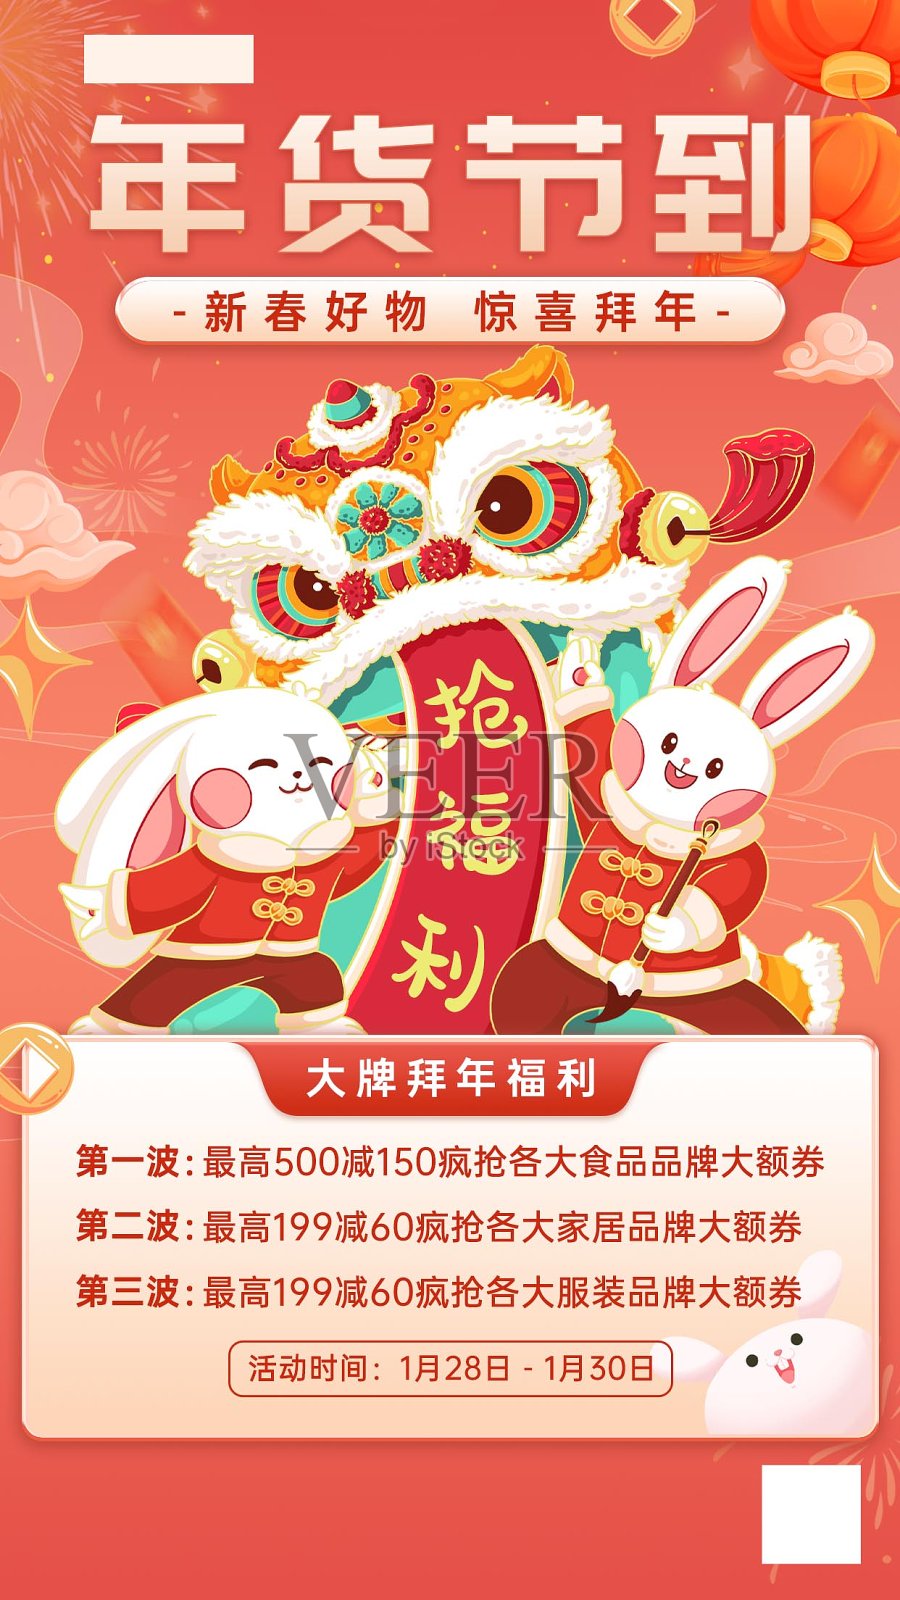 年货节活动促销春节好物中国风喜庆海报设计模板素材